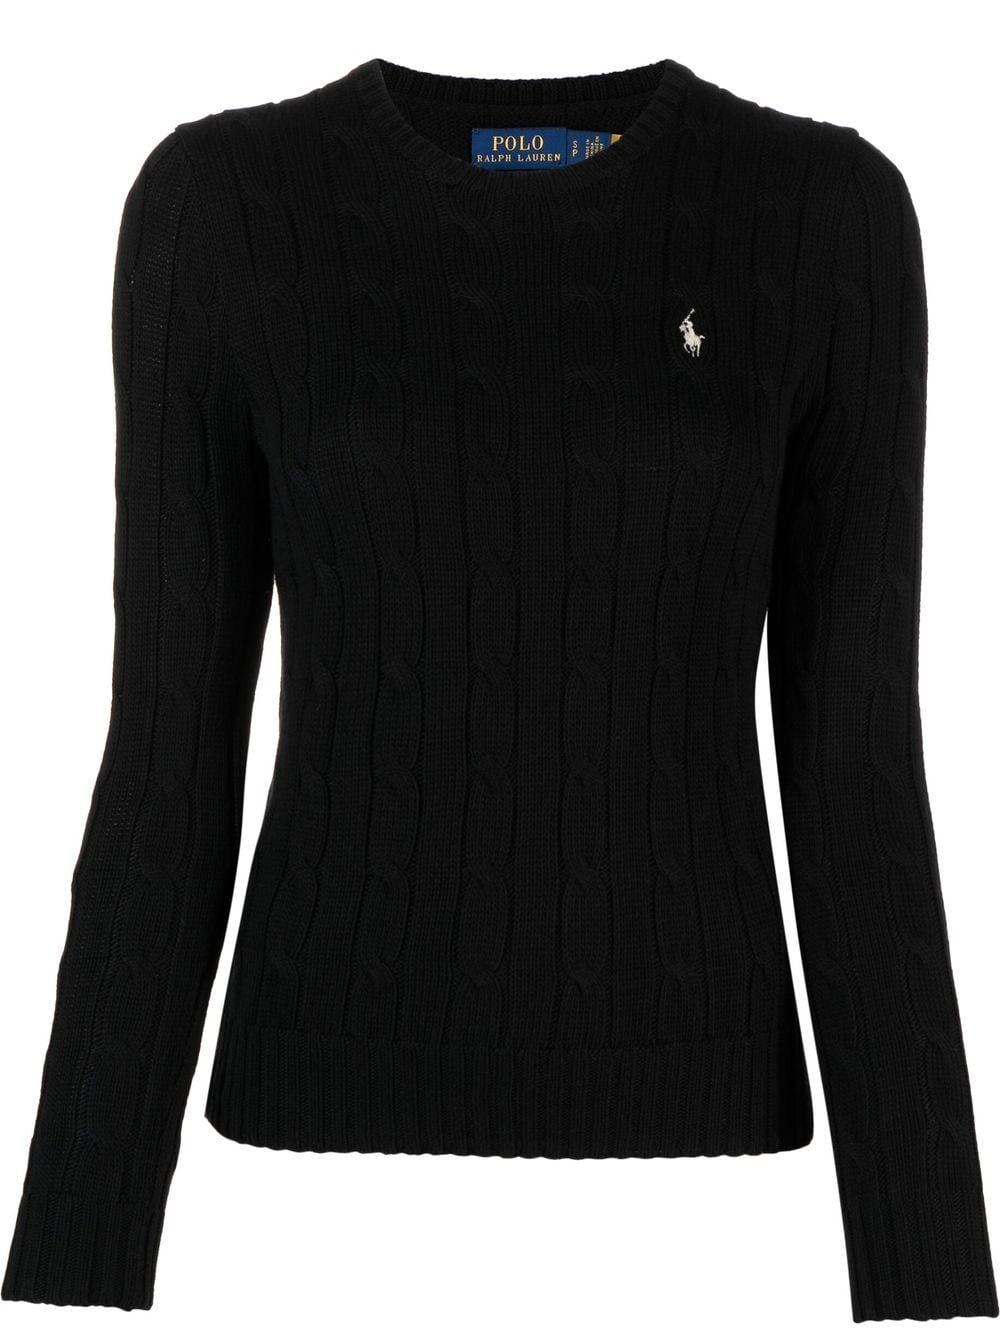 Где купить идеальный черный свитер, как у Кендалл Дженнер?